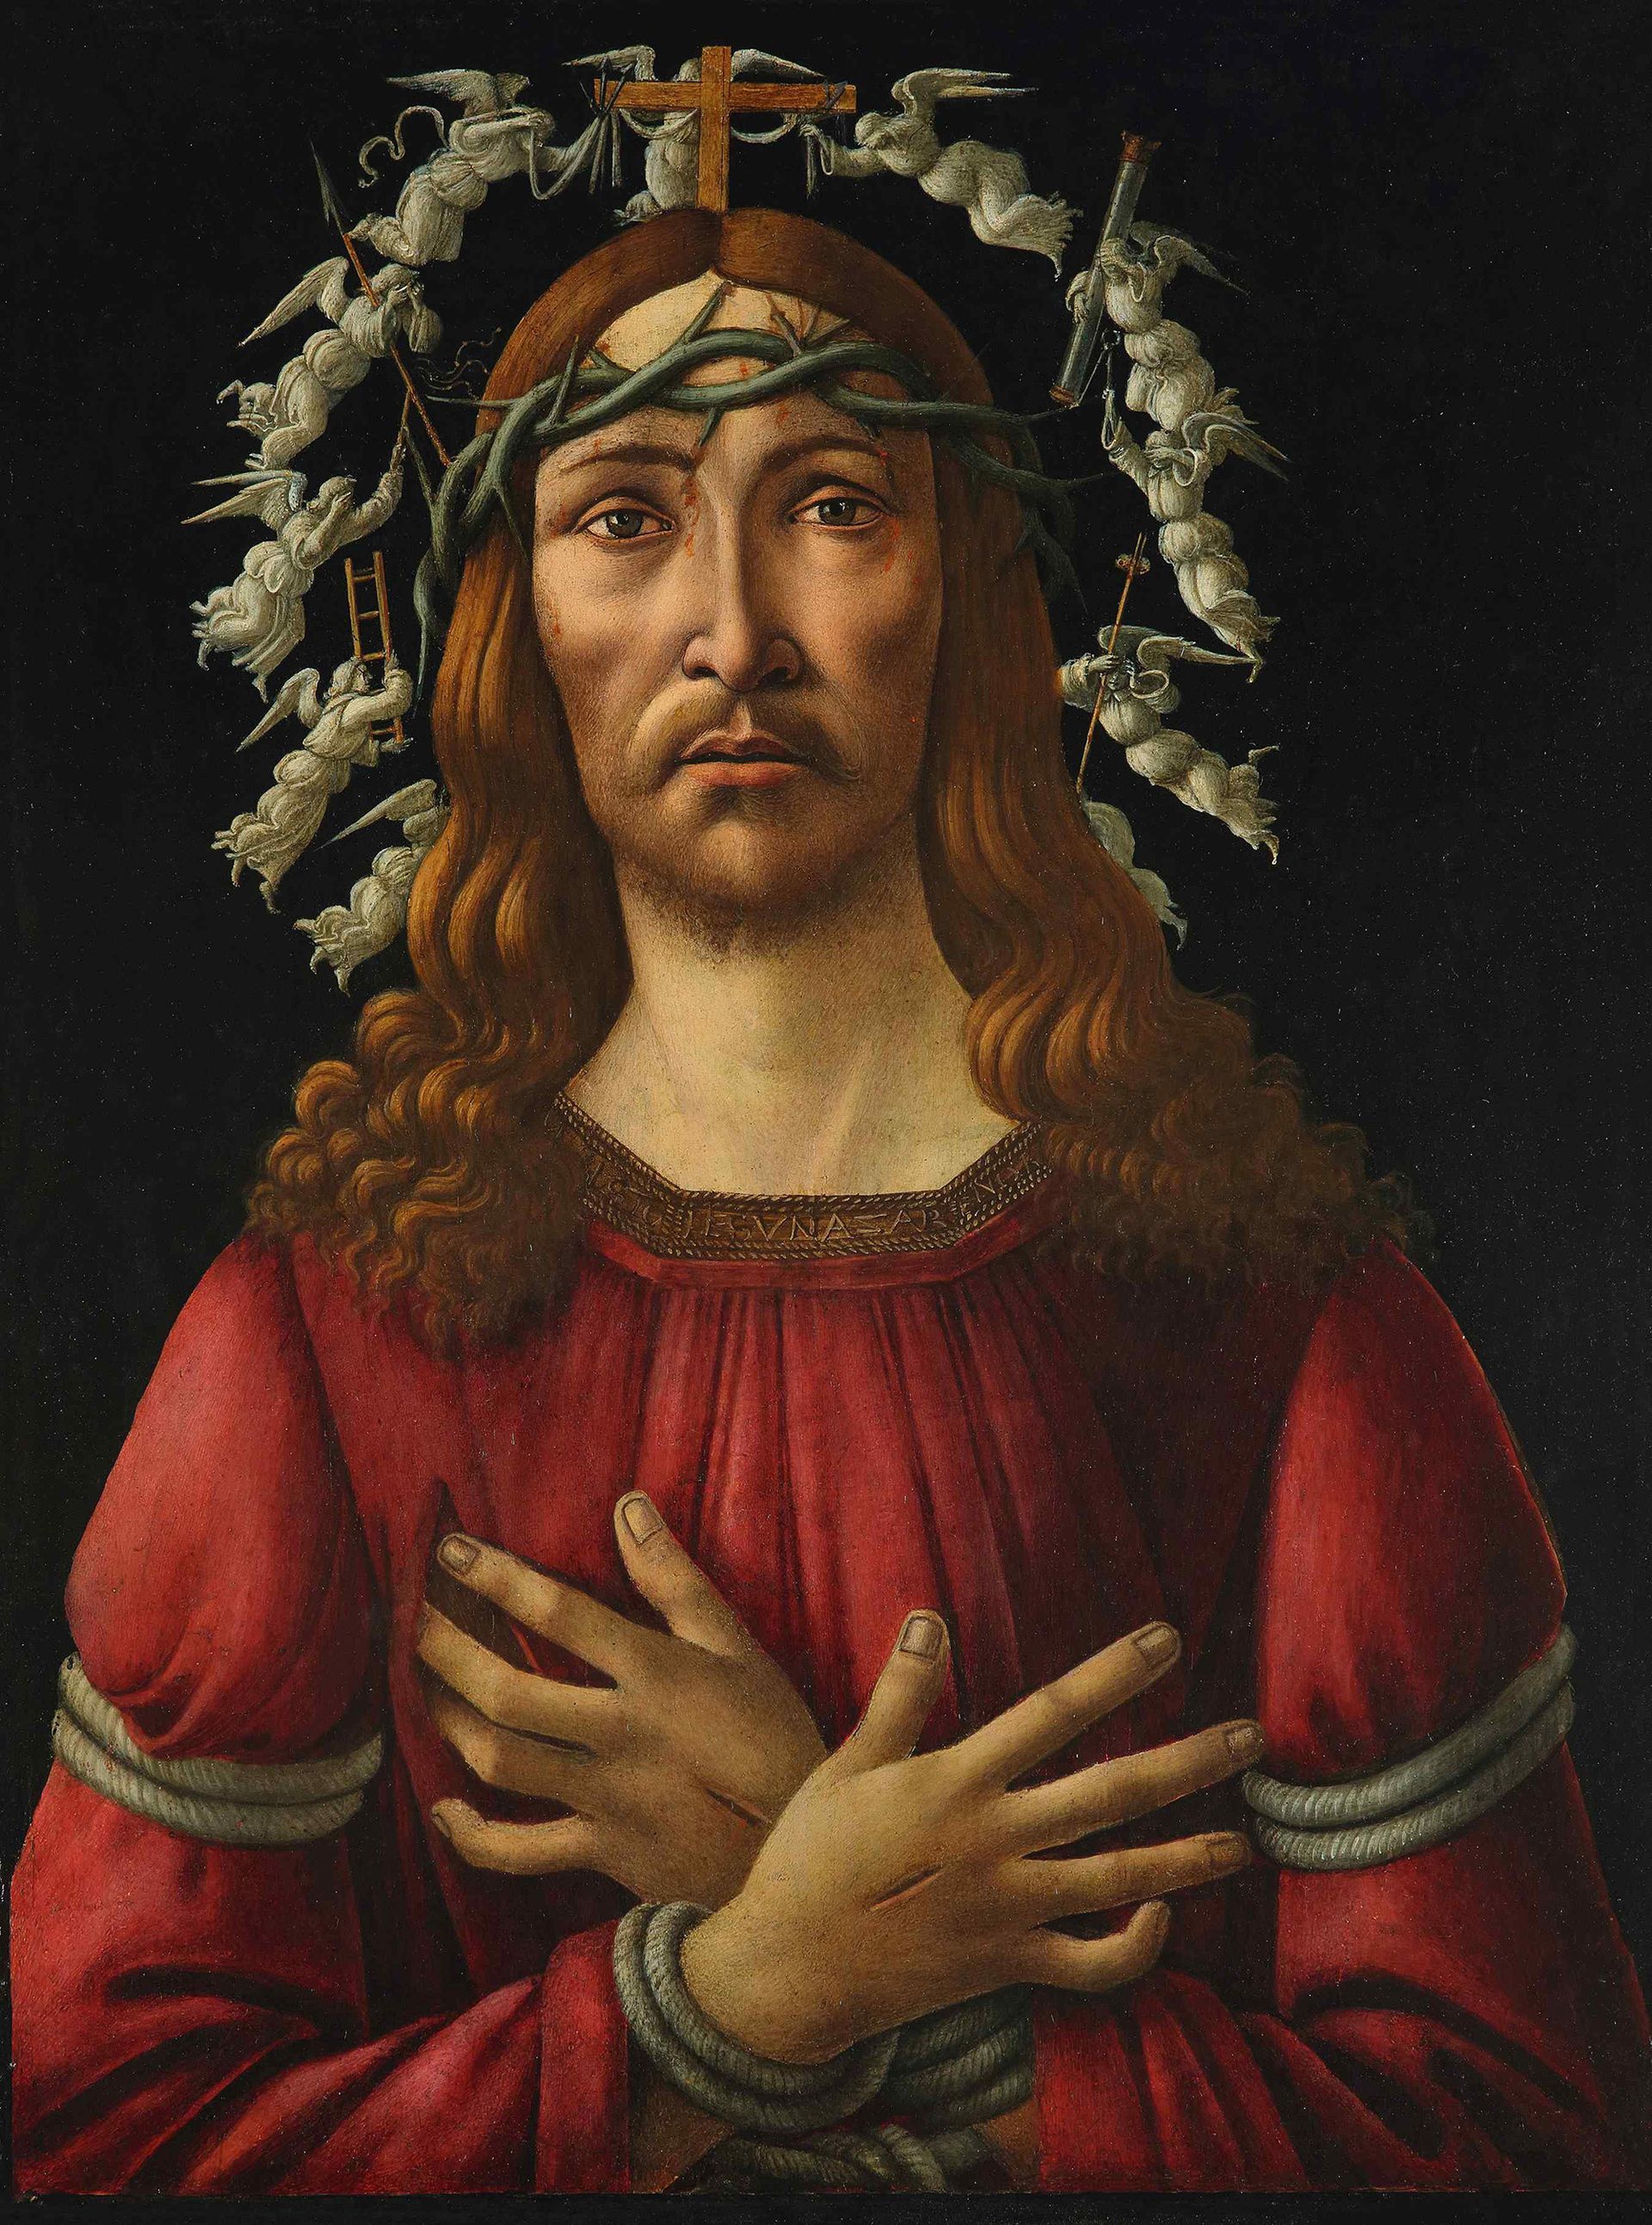 סנדרו בוטיצ'לי, The Man of Sorrows (בסביבות 1500)

באדיבות סותבי'ס